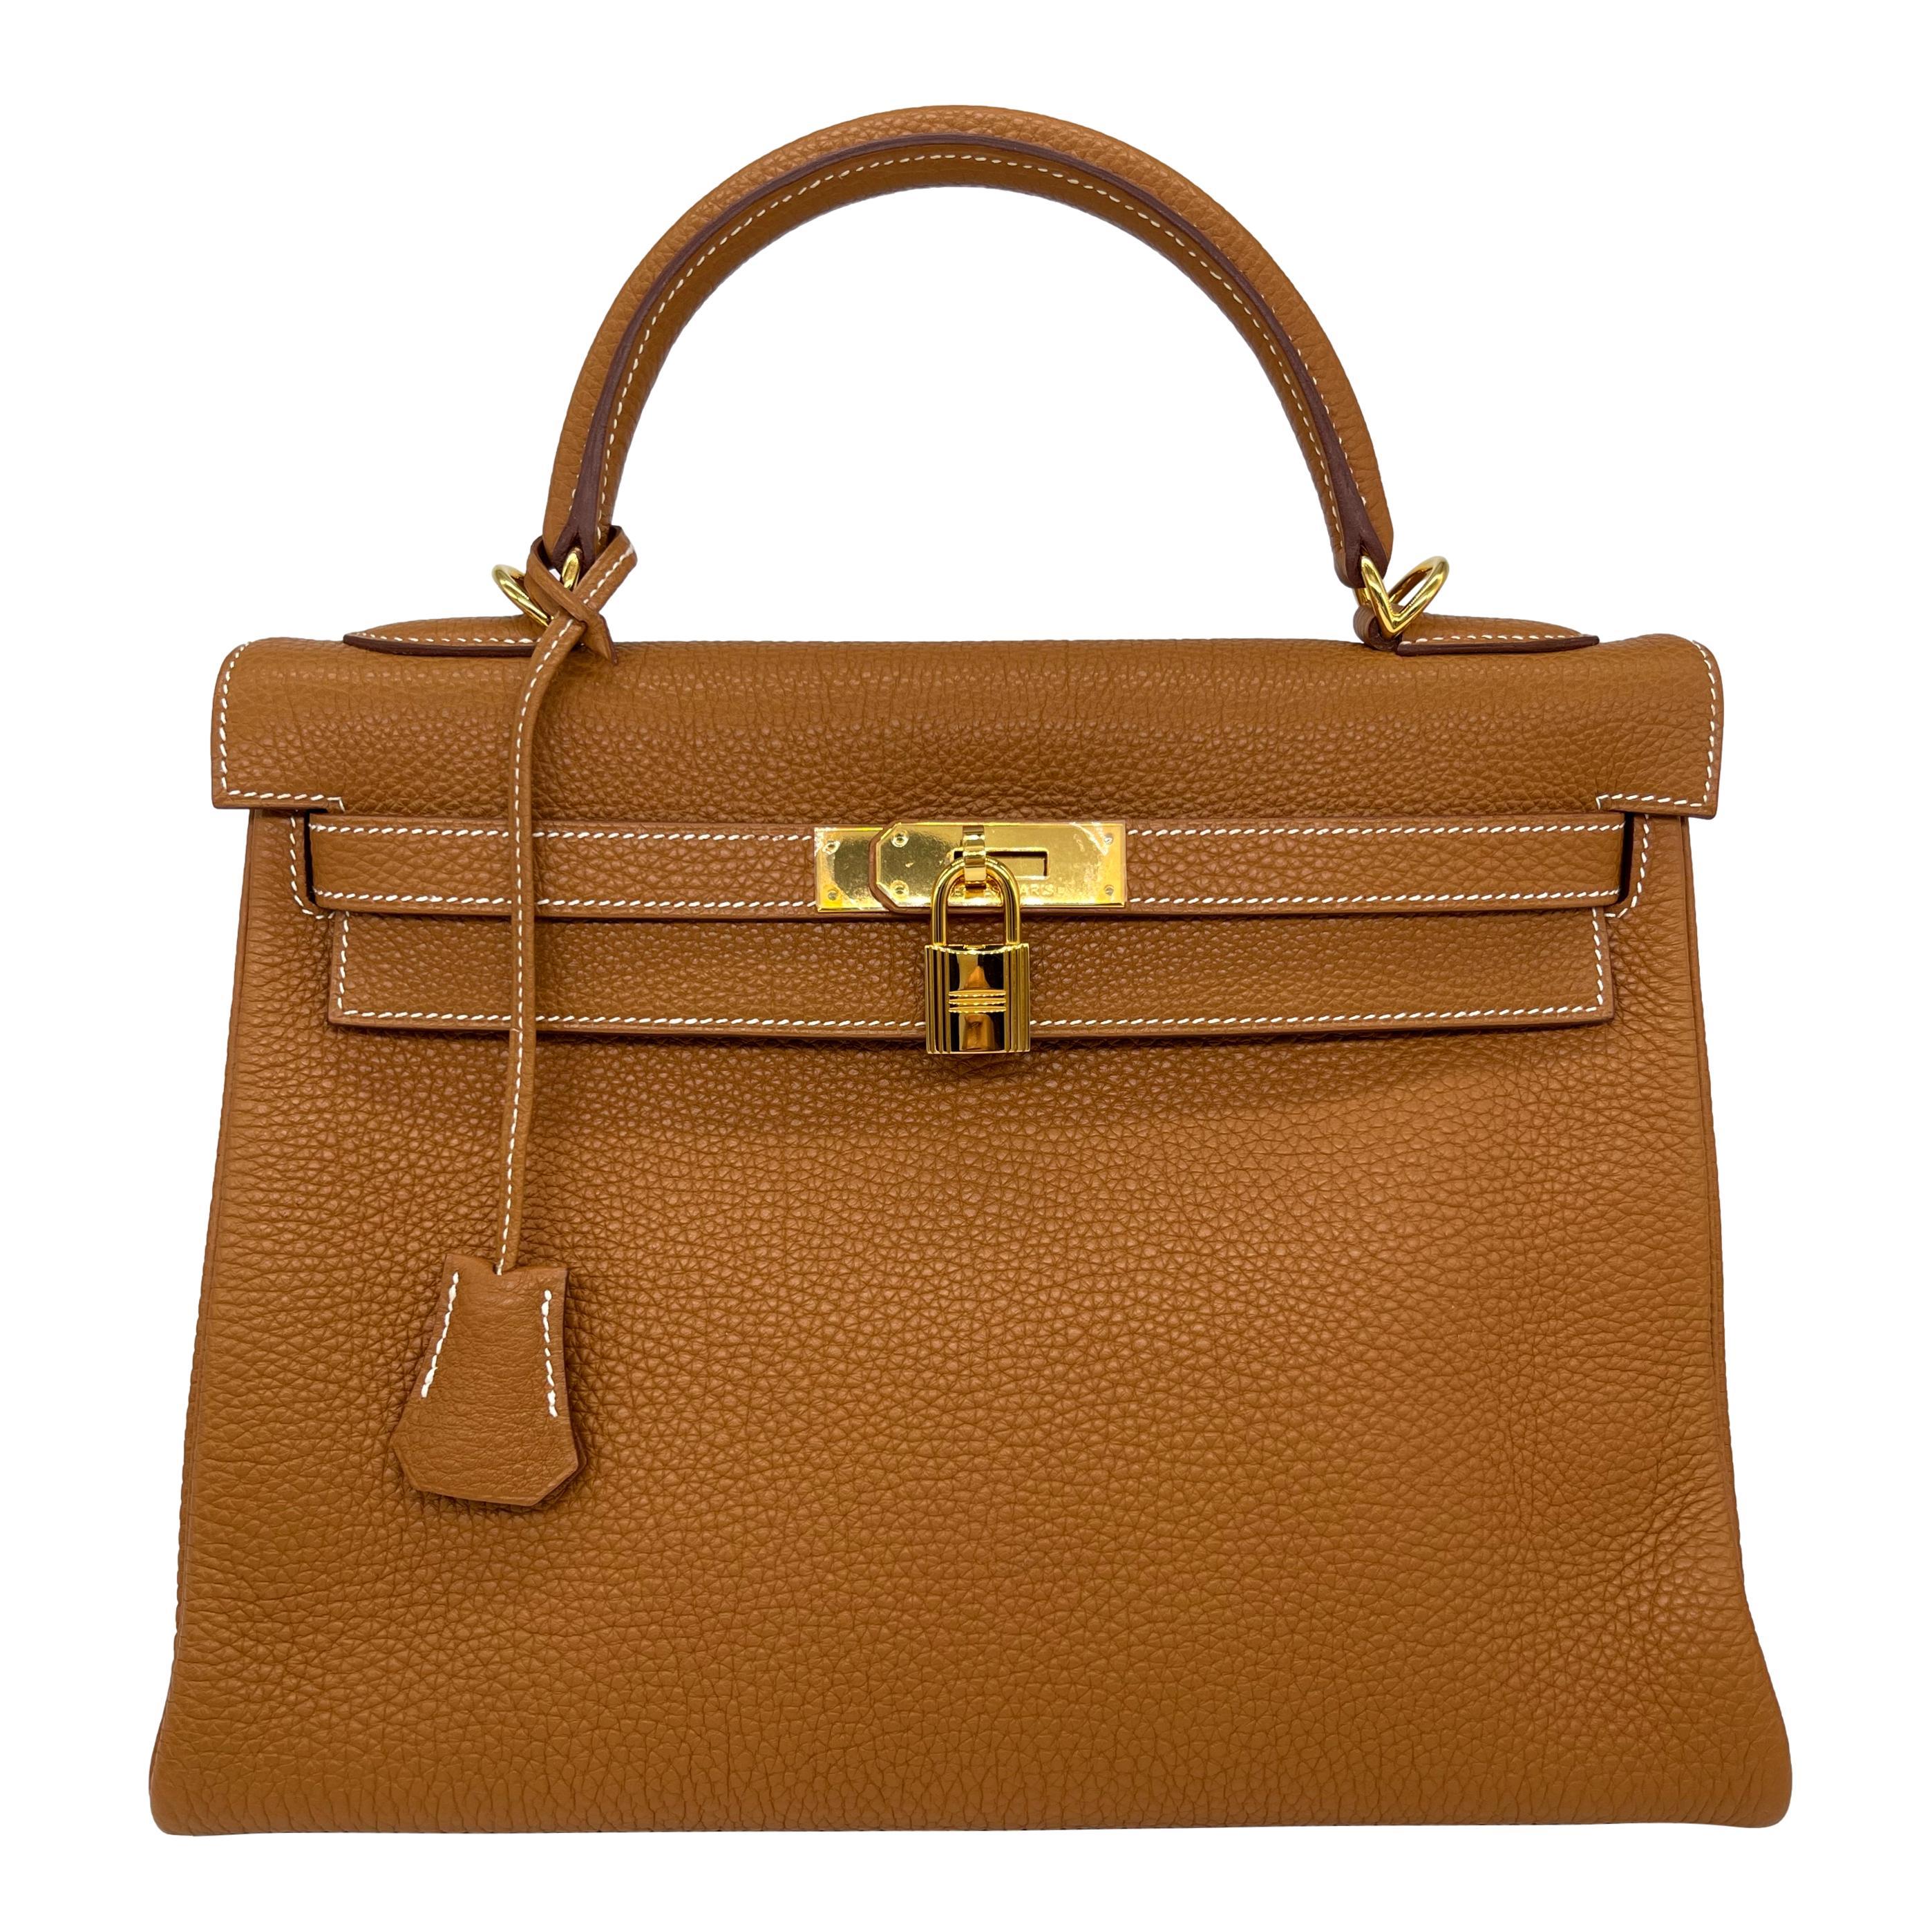 Hermès Natural Clemence Retourne Kelly Handbag with Gold Hardware 32cm, 2007. Introduit au début des années 1930 sous le nom de Sac à dépêches, le Kelly a acquis une renommée mondiale après que Grace Kelly, princesse de Monaco, soit apparue en